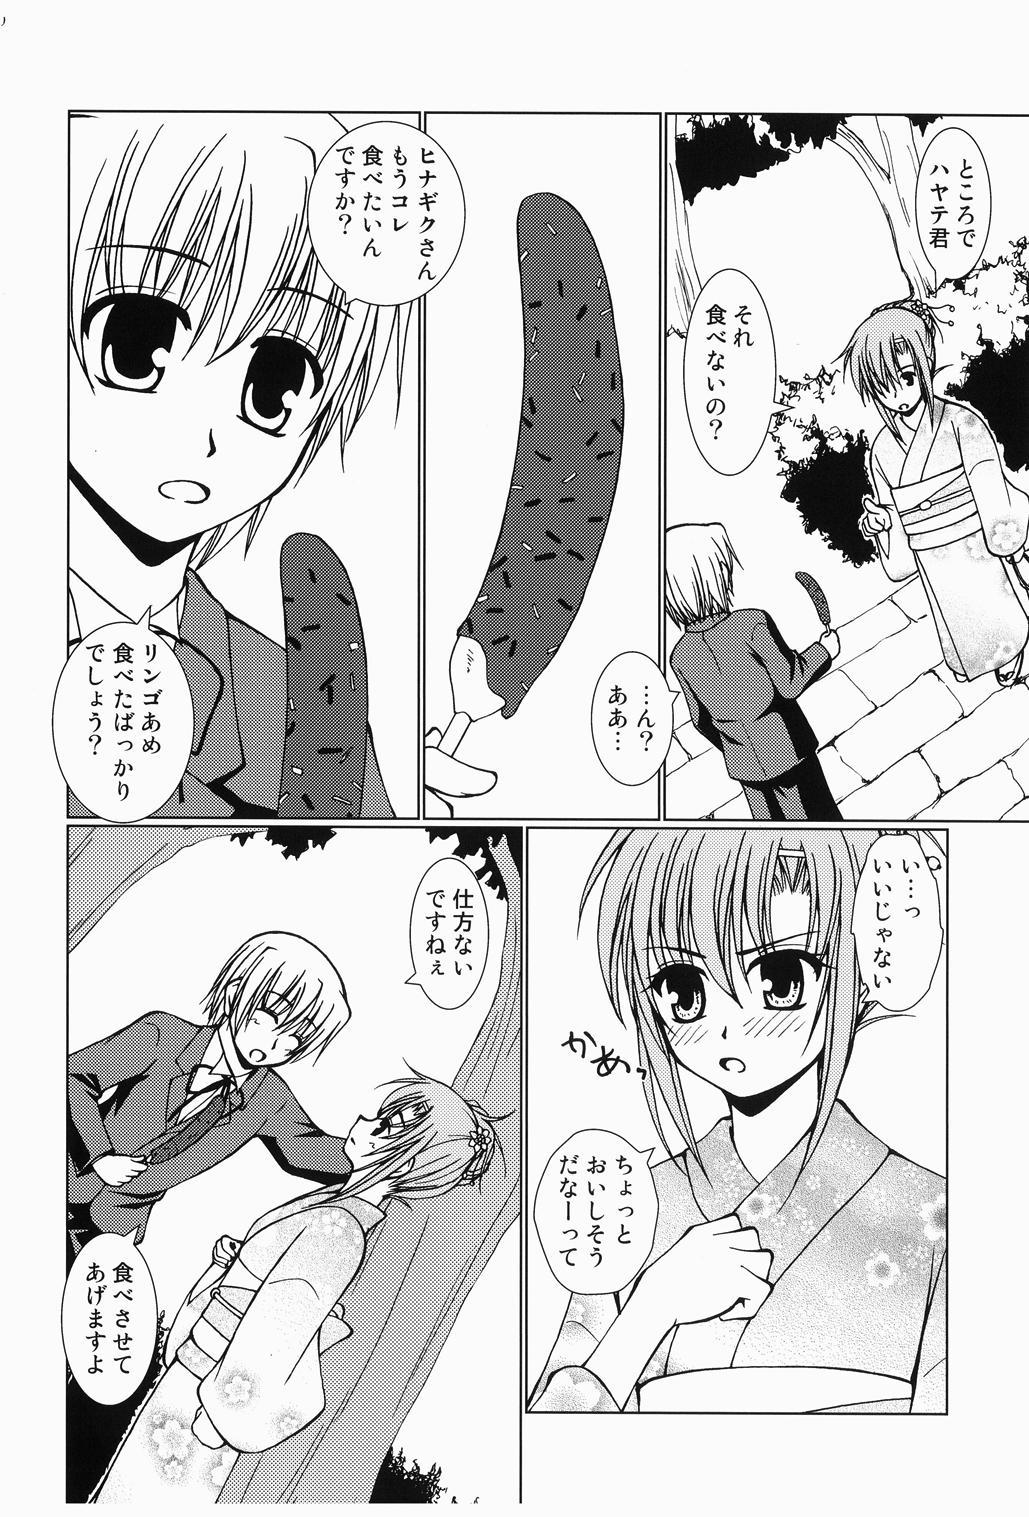 Tats Daijoubu! Yukata Dakara! - Hayate no gotoku Milf Sex - Page 9